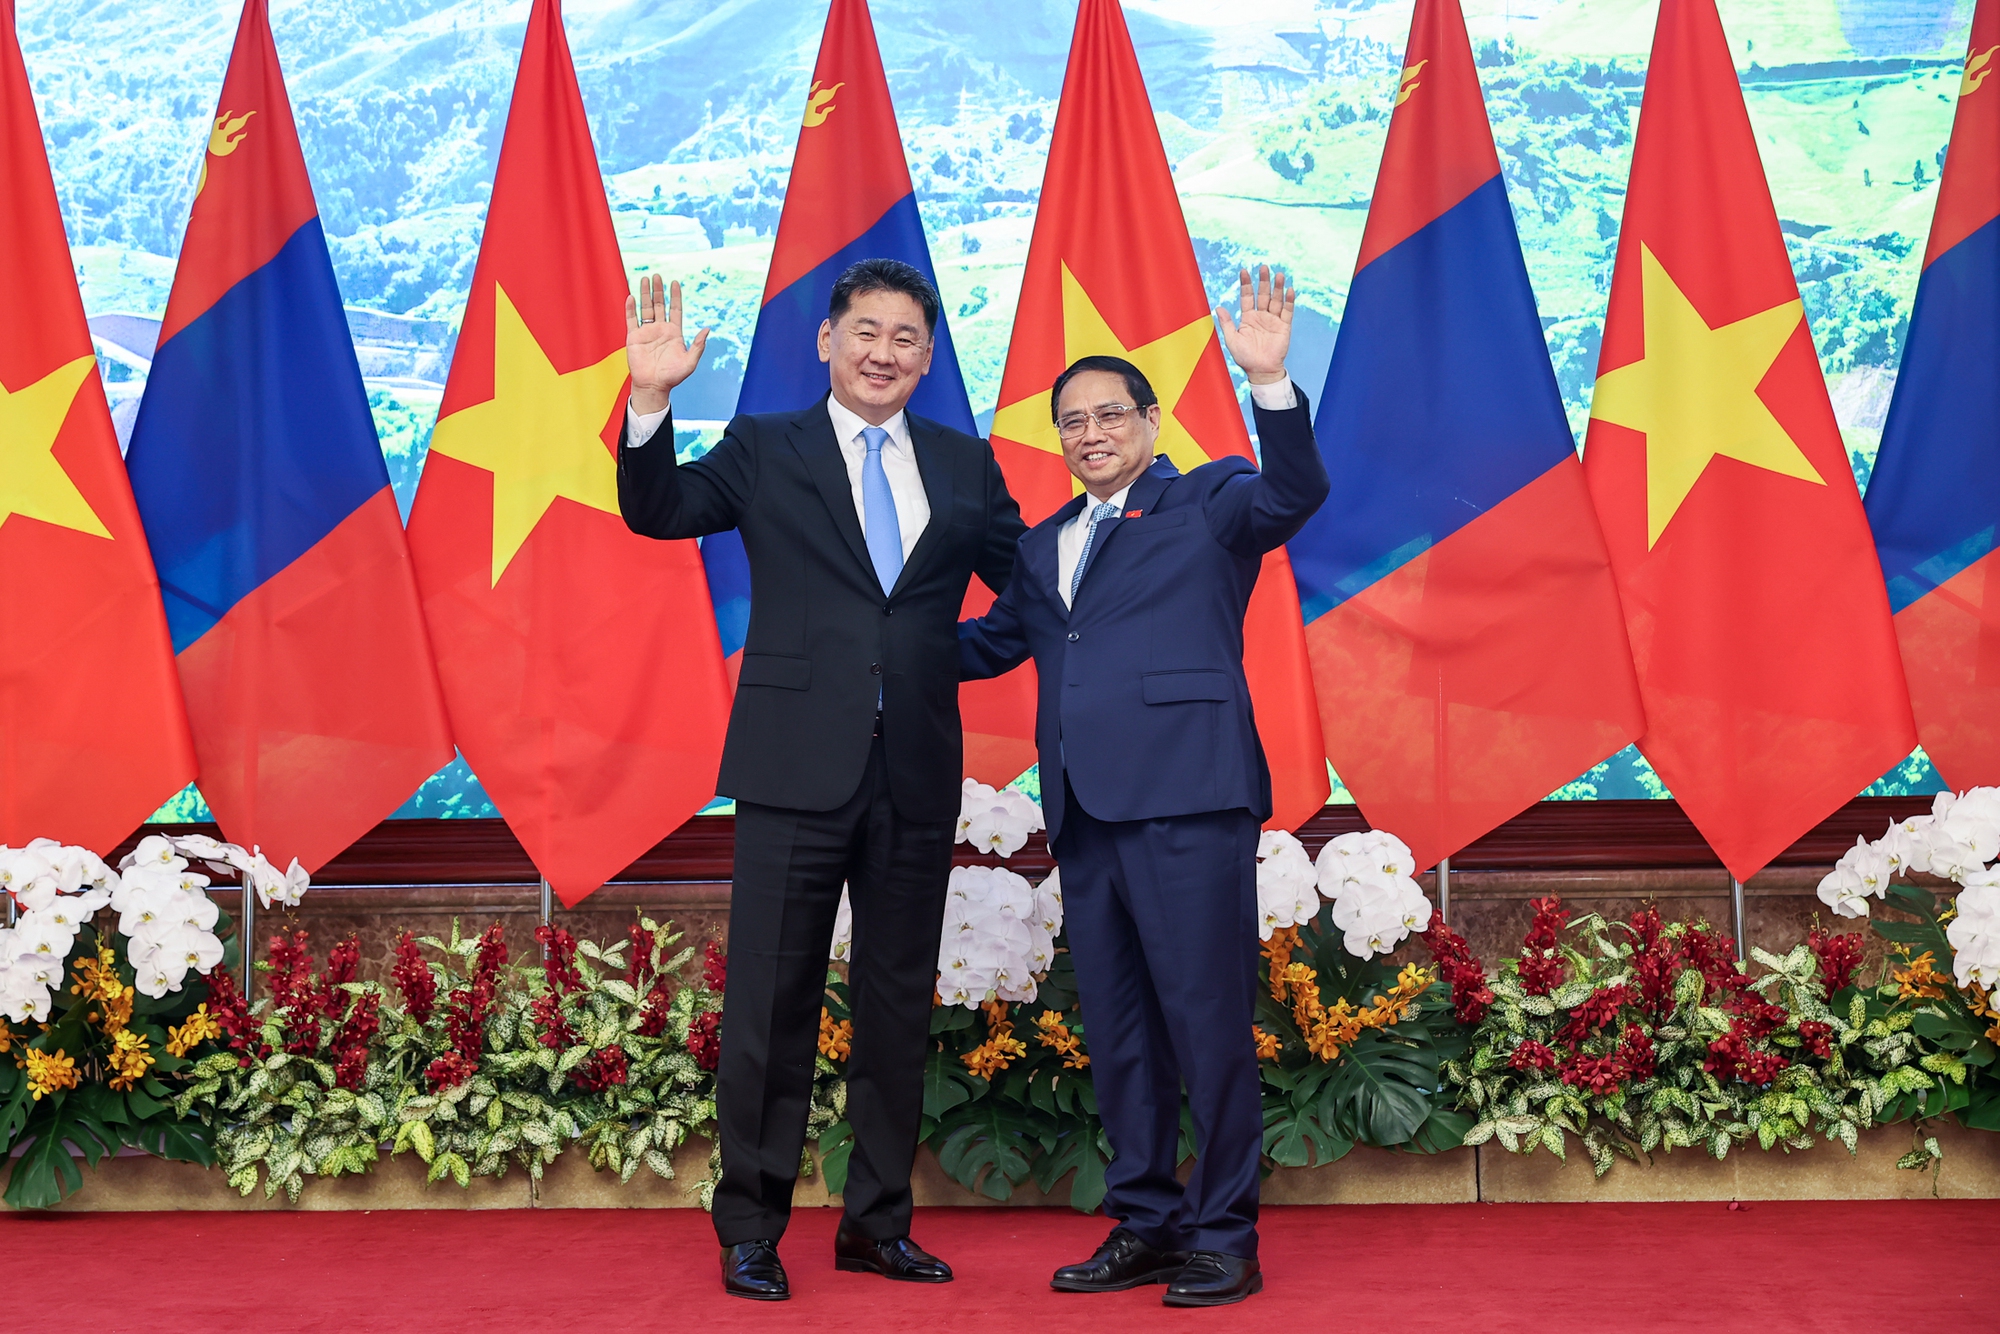 Thủ tướng Phạm Minh Chính và Tổng thống Mông Cổ Khurelsukh bày tỏ vui mừng về những bước phát triển thực chất trong quan hệ hợp tác hai nước những năm gần đây - Ảnh: VGP/Nhật Bắc